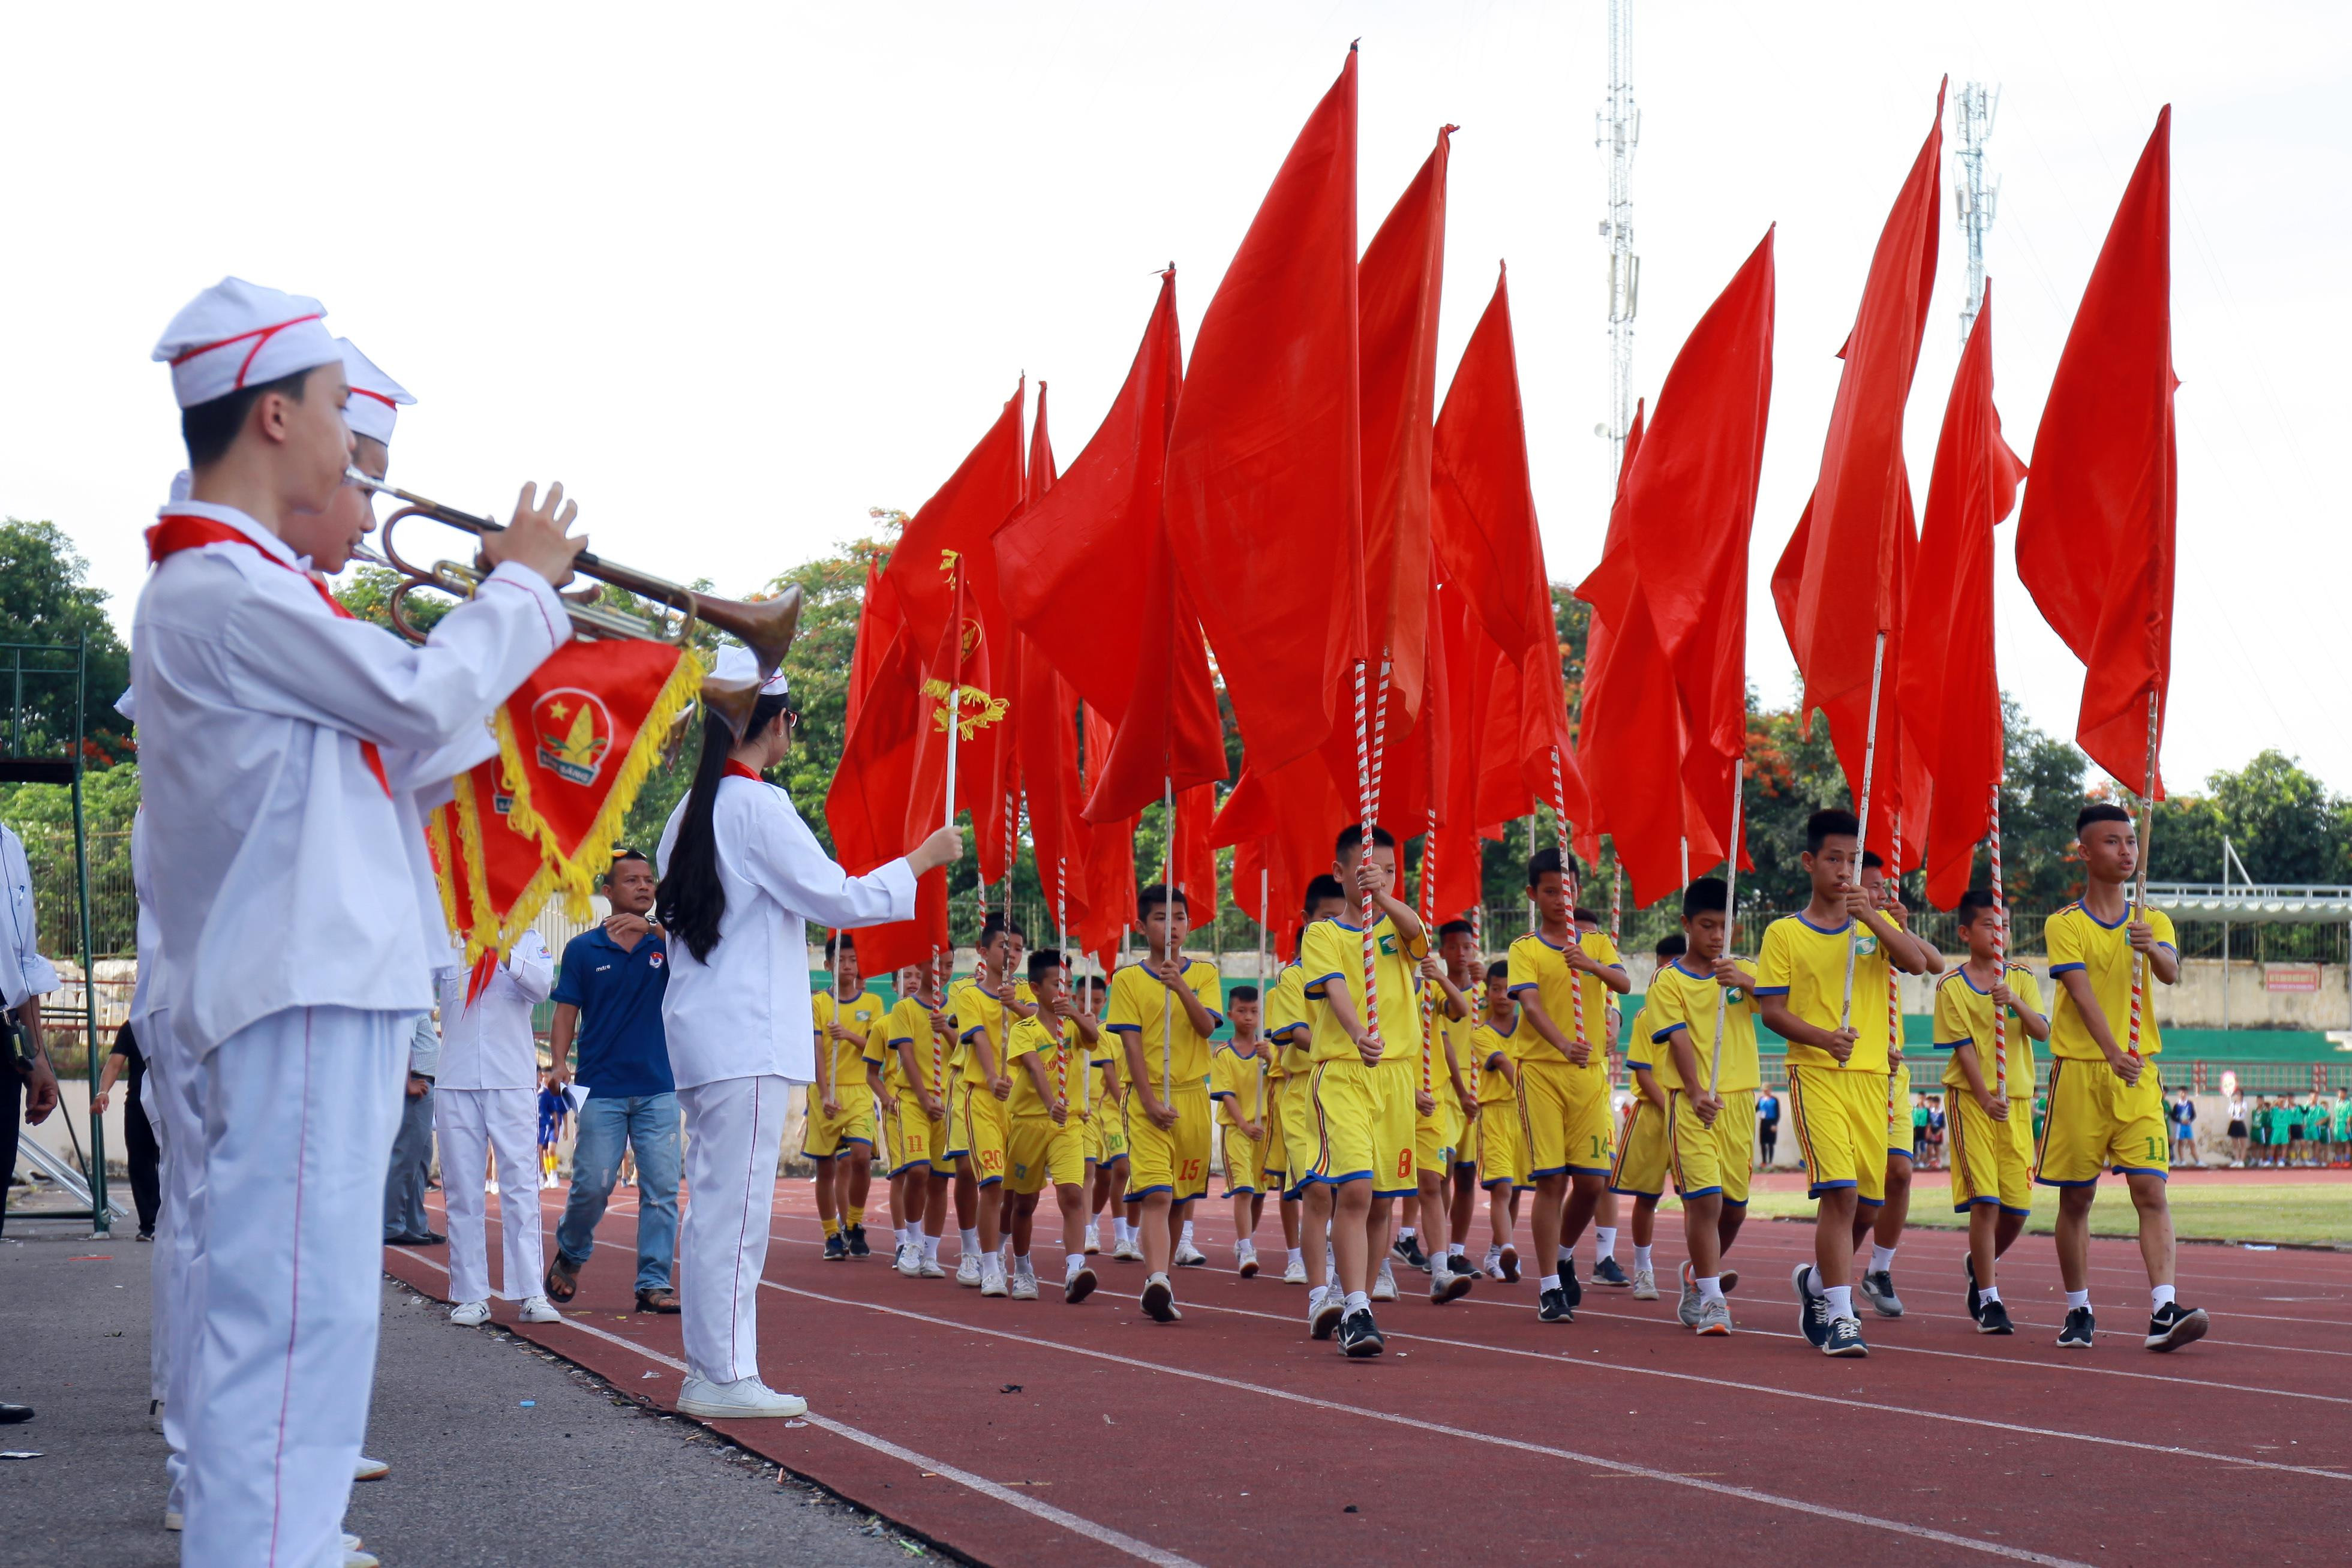 Lễ diễu hành của hơn 500 vận động viên thiếu niên - nhi đồng tham gia Cúp báo. Ngoài ra, còn có sự góp mặt của các cầu thủ trẻ đang tập luyện trong màu cờ sắc áo của đội bóng Sông Lam Nghệ An. Ảnh: Sách Nguyễn